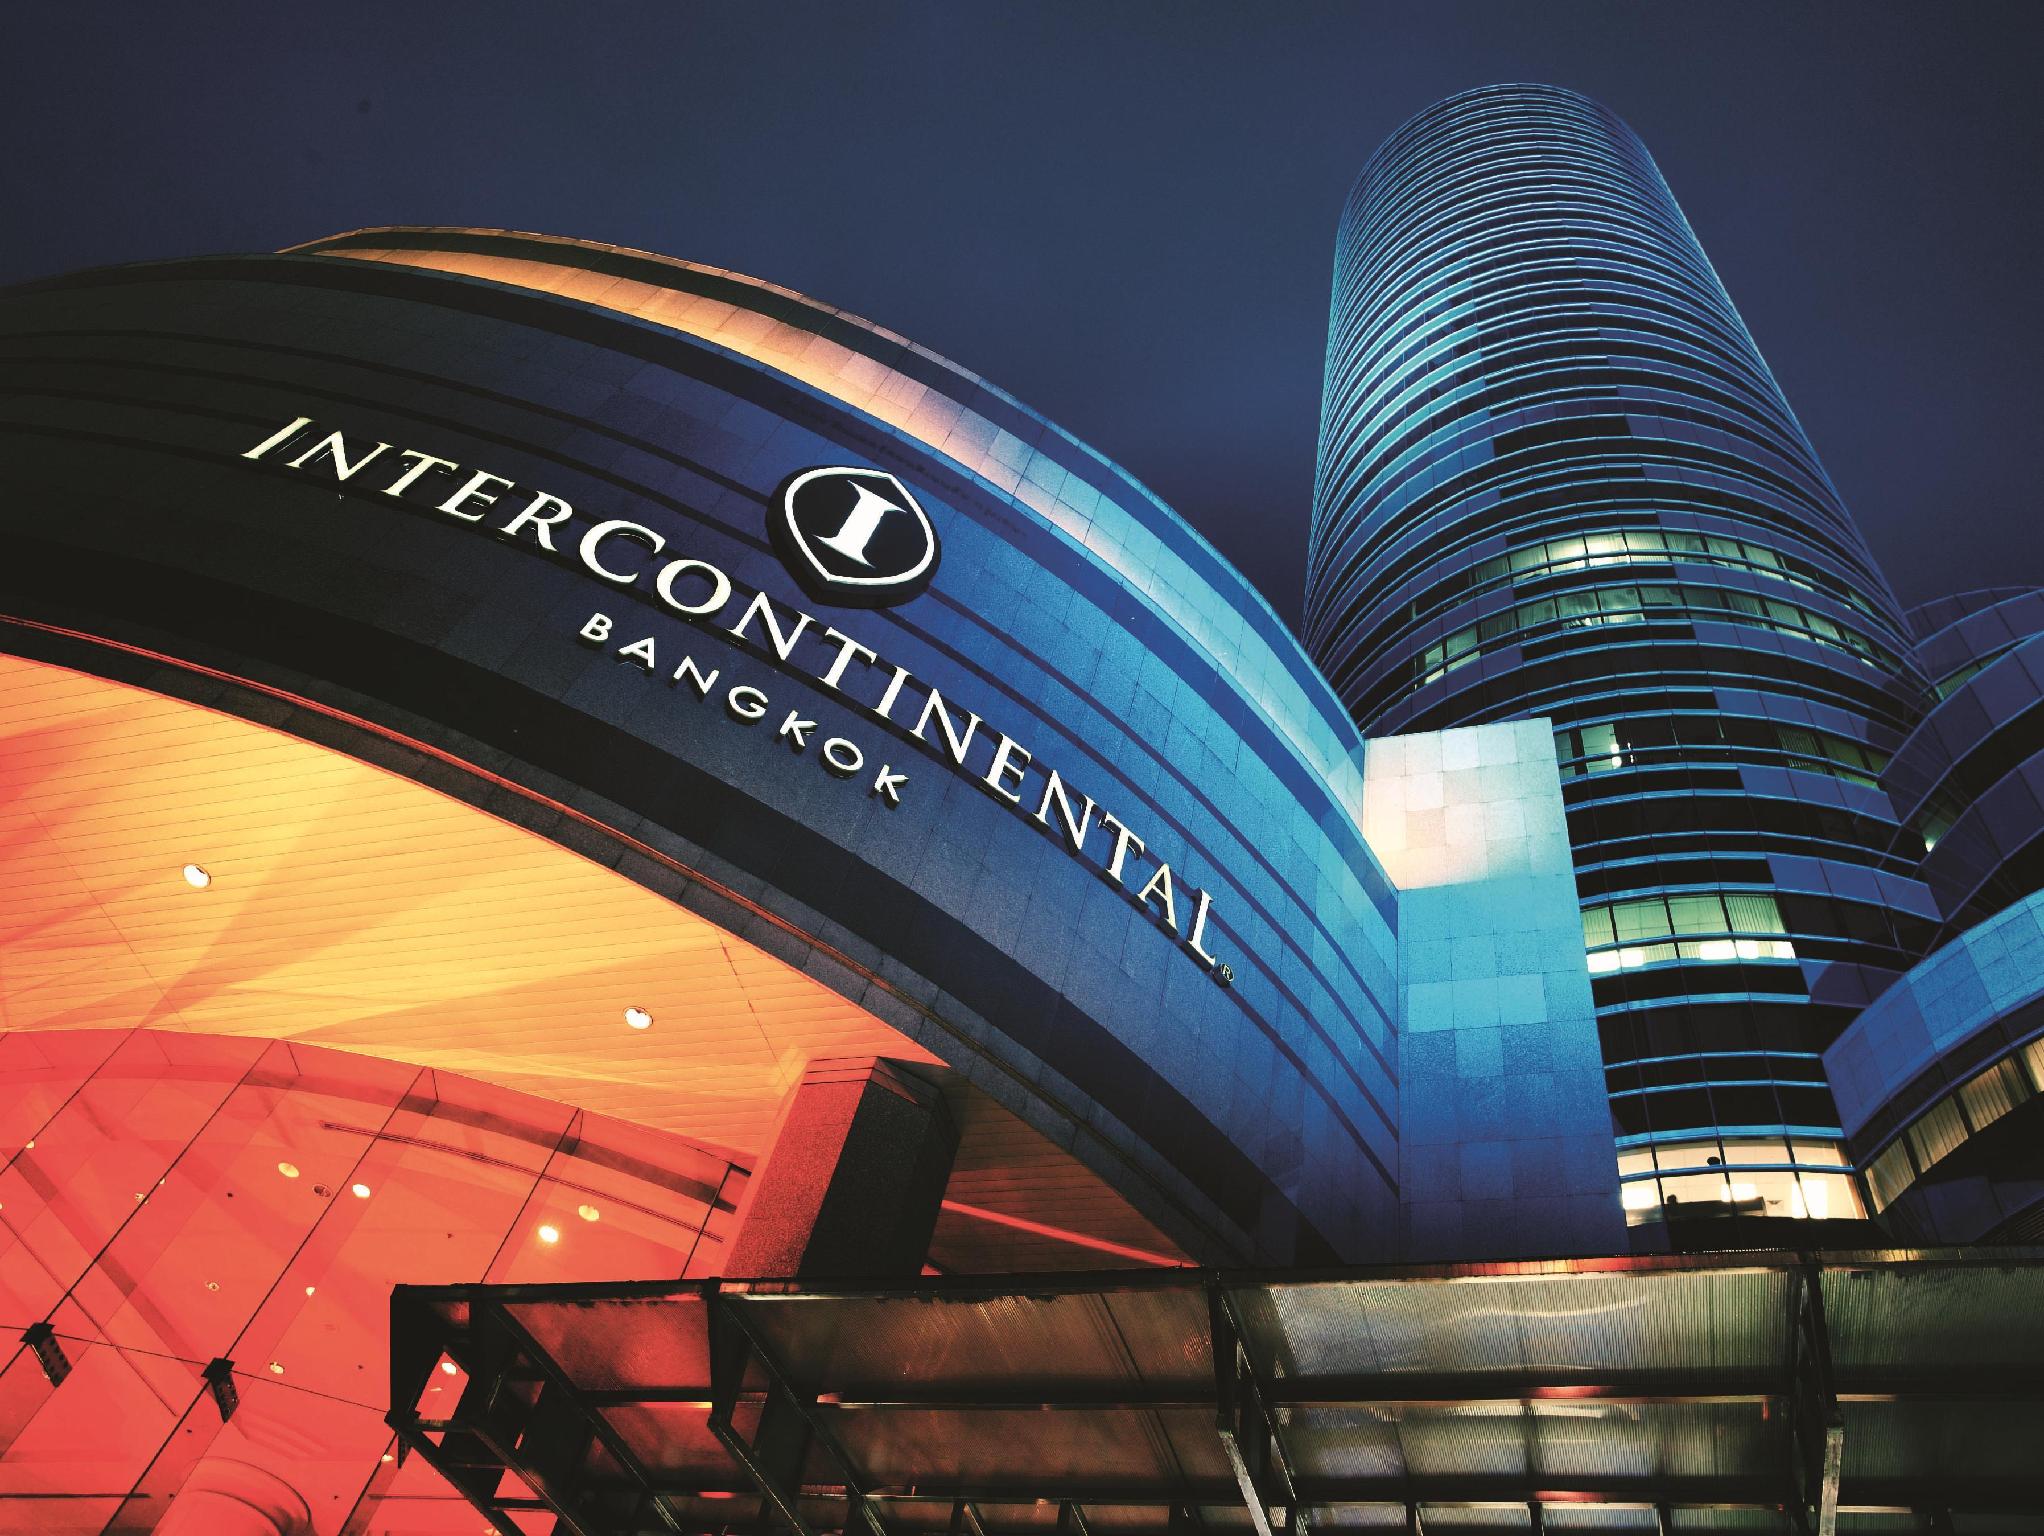 โรงแรมอินเตอร์คอนติเนนตัล กรุงเทพ (InterContinental Bangkok Hotel)